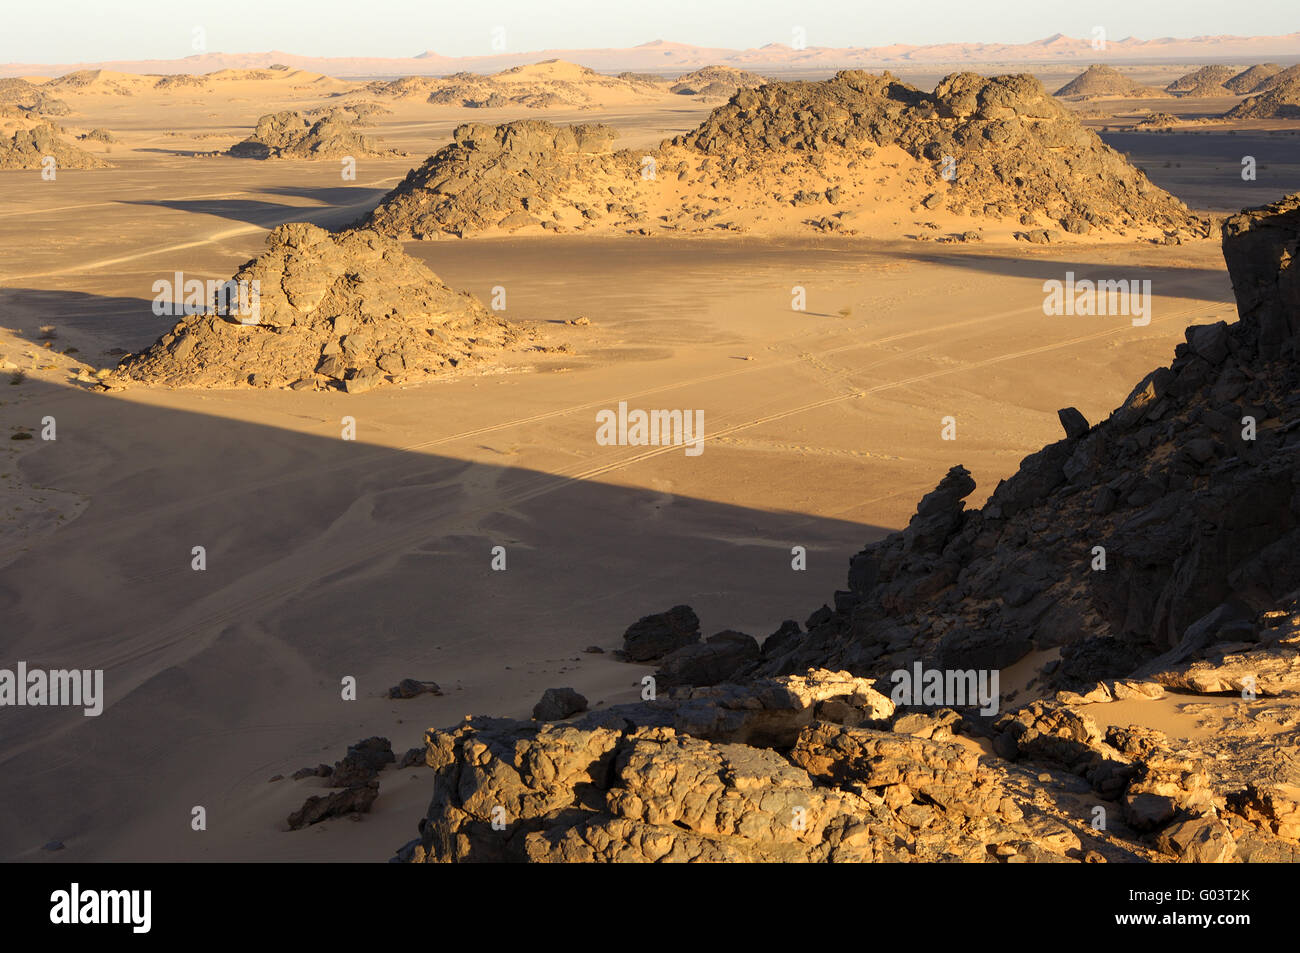 Desertscape with eroded rock hills, Sahara desert Stock Photo